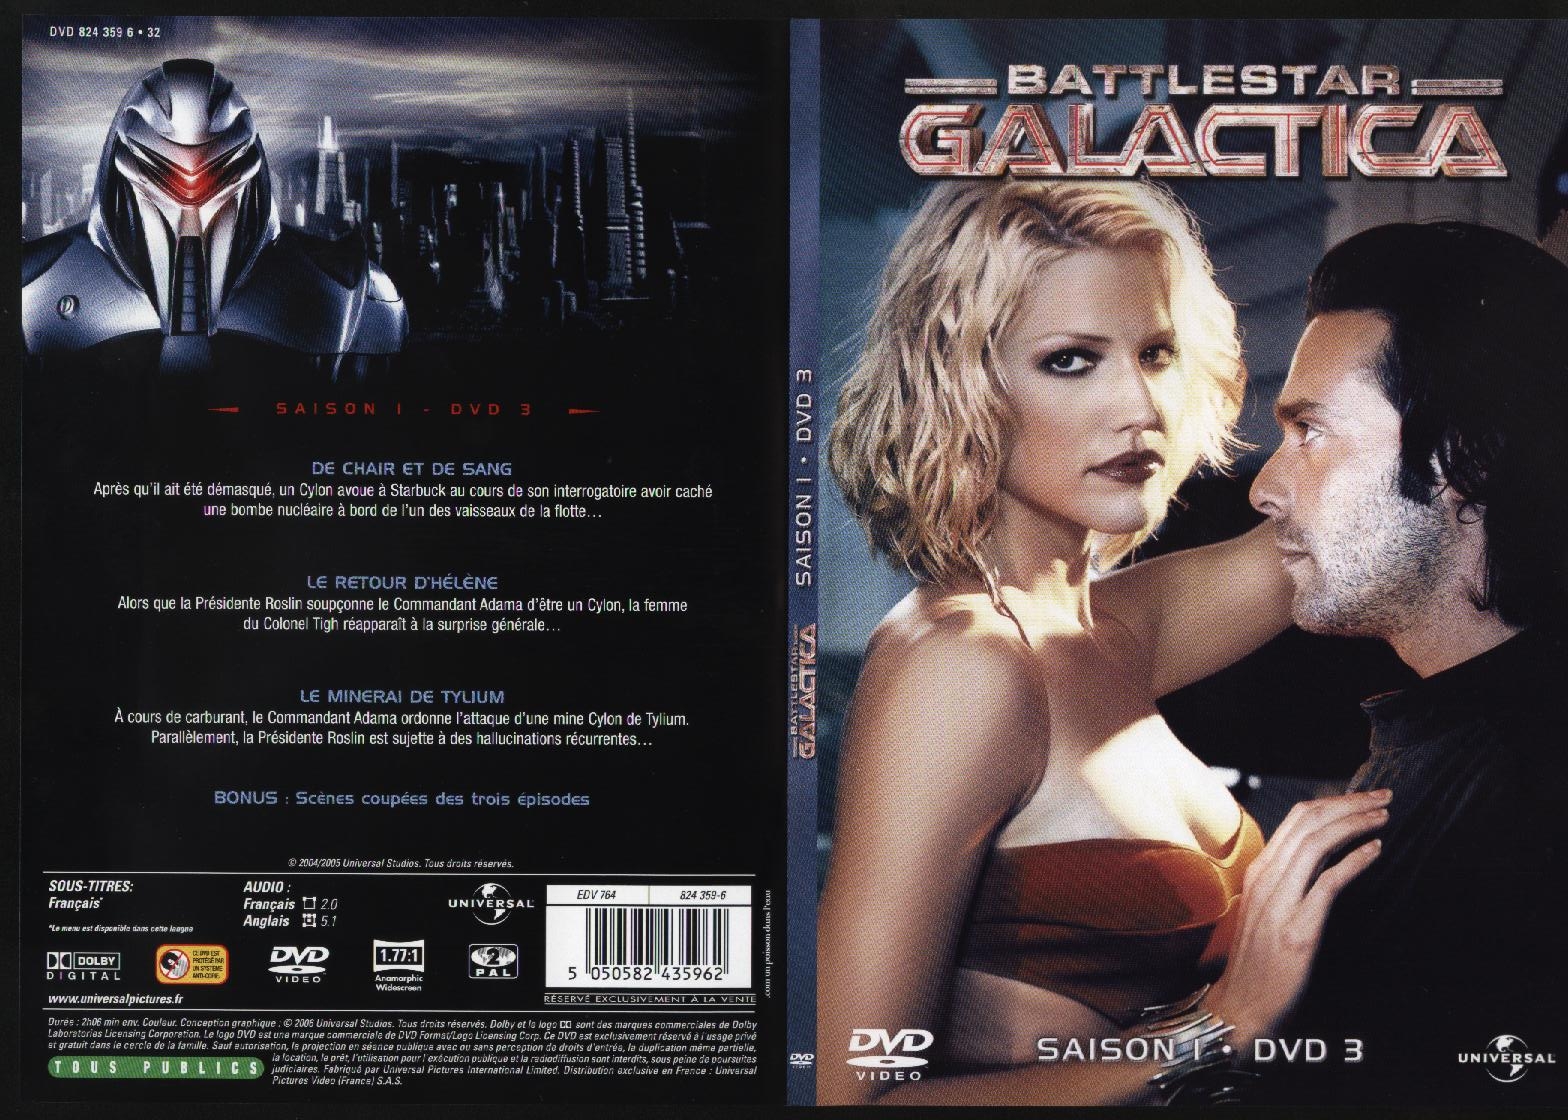 Jaquette DVD Battlestar Galactica saison 1 dvd 3